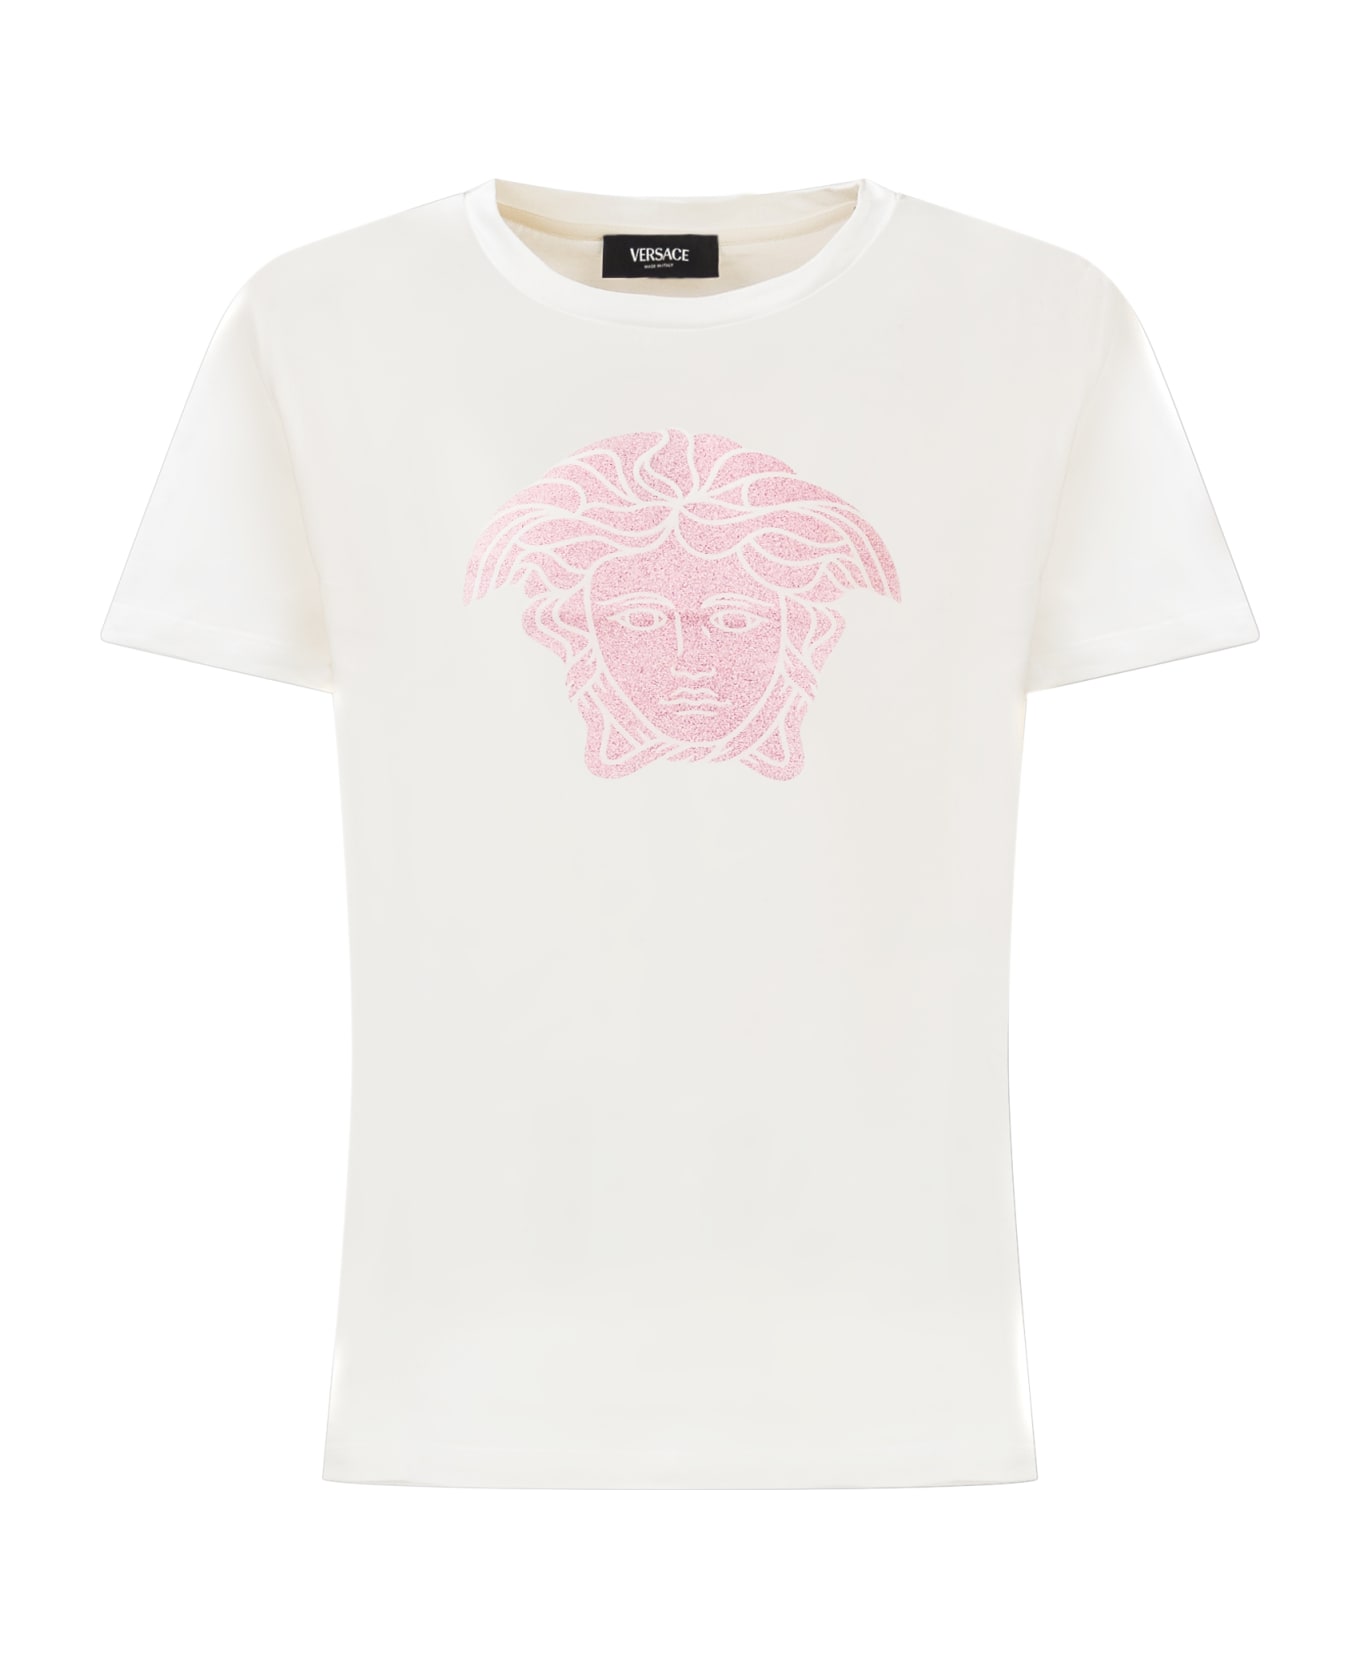 Young Versace T-shirt With Logo - BIANCO-TUTU PINK